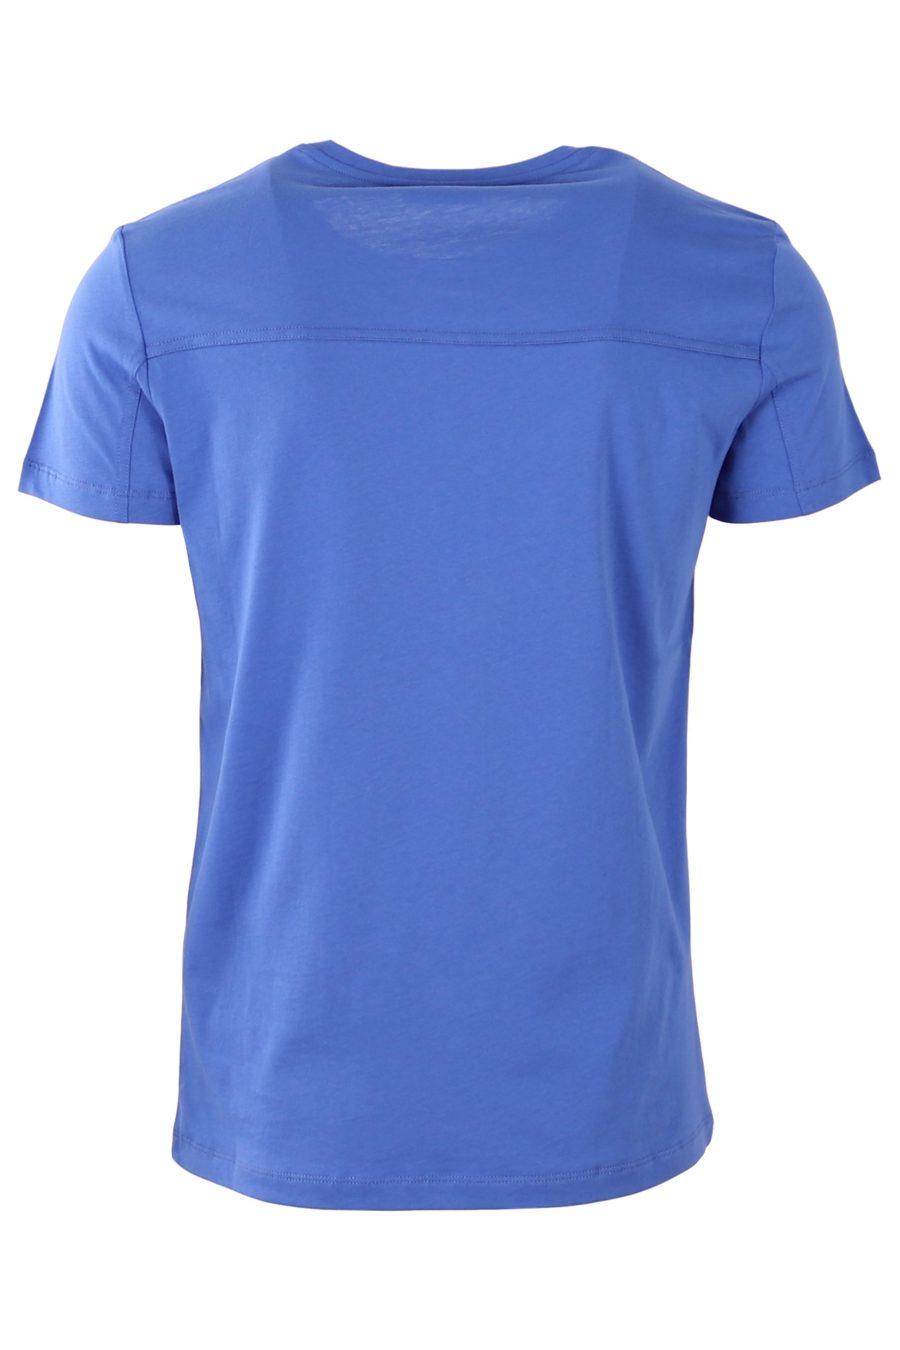 Camiseta Balmain azul con parche dorado - 1ea26ace6474cd95b06c2f281bde5869c05448e4